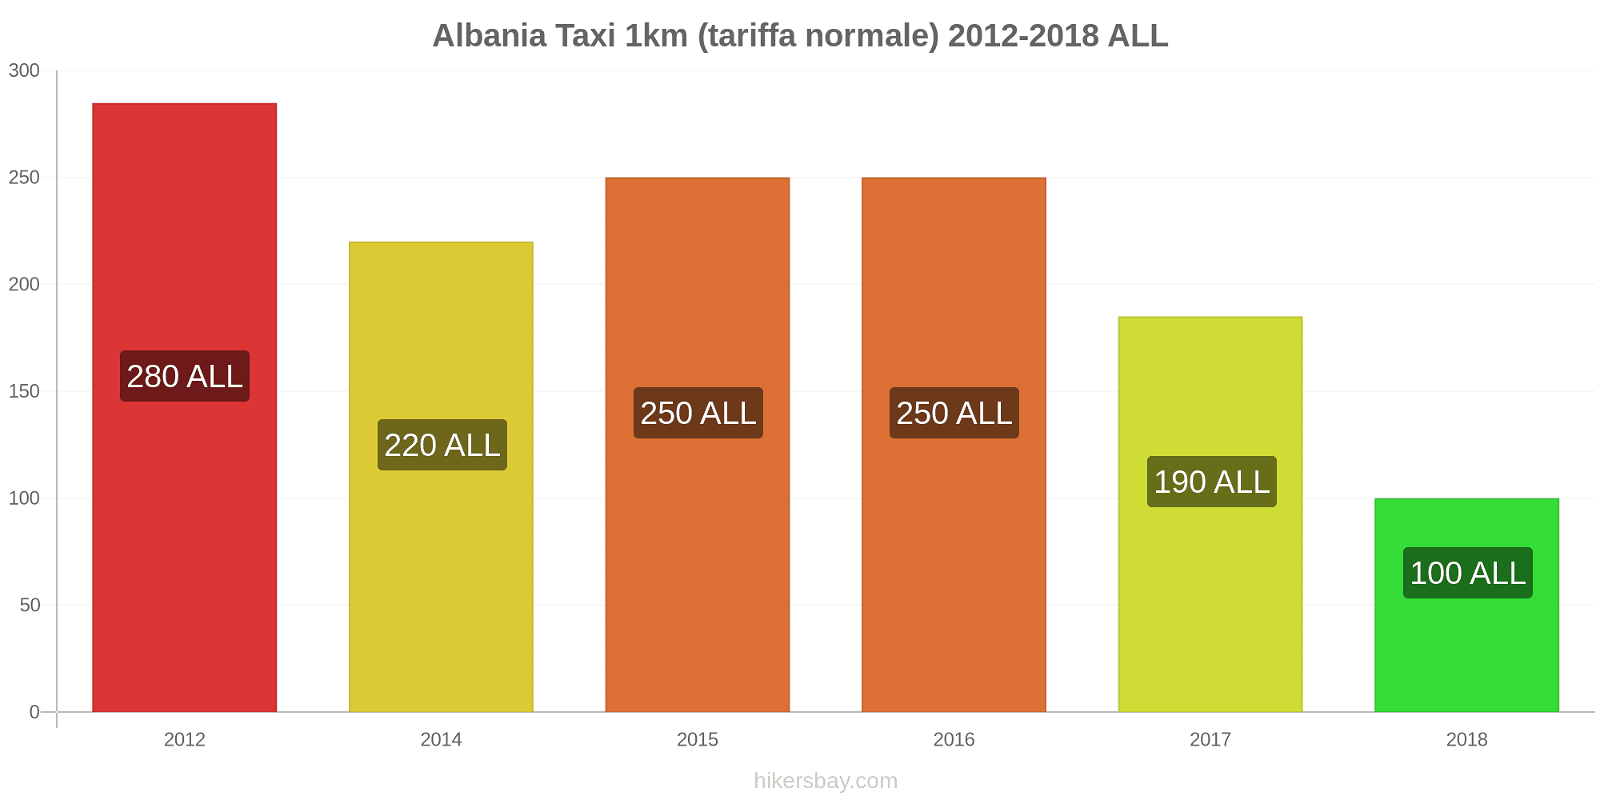 Albania cambi di prezzo Taxi 1km (tariffa normale) hikersbay.com